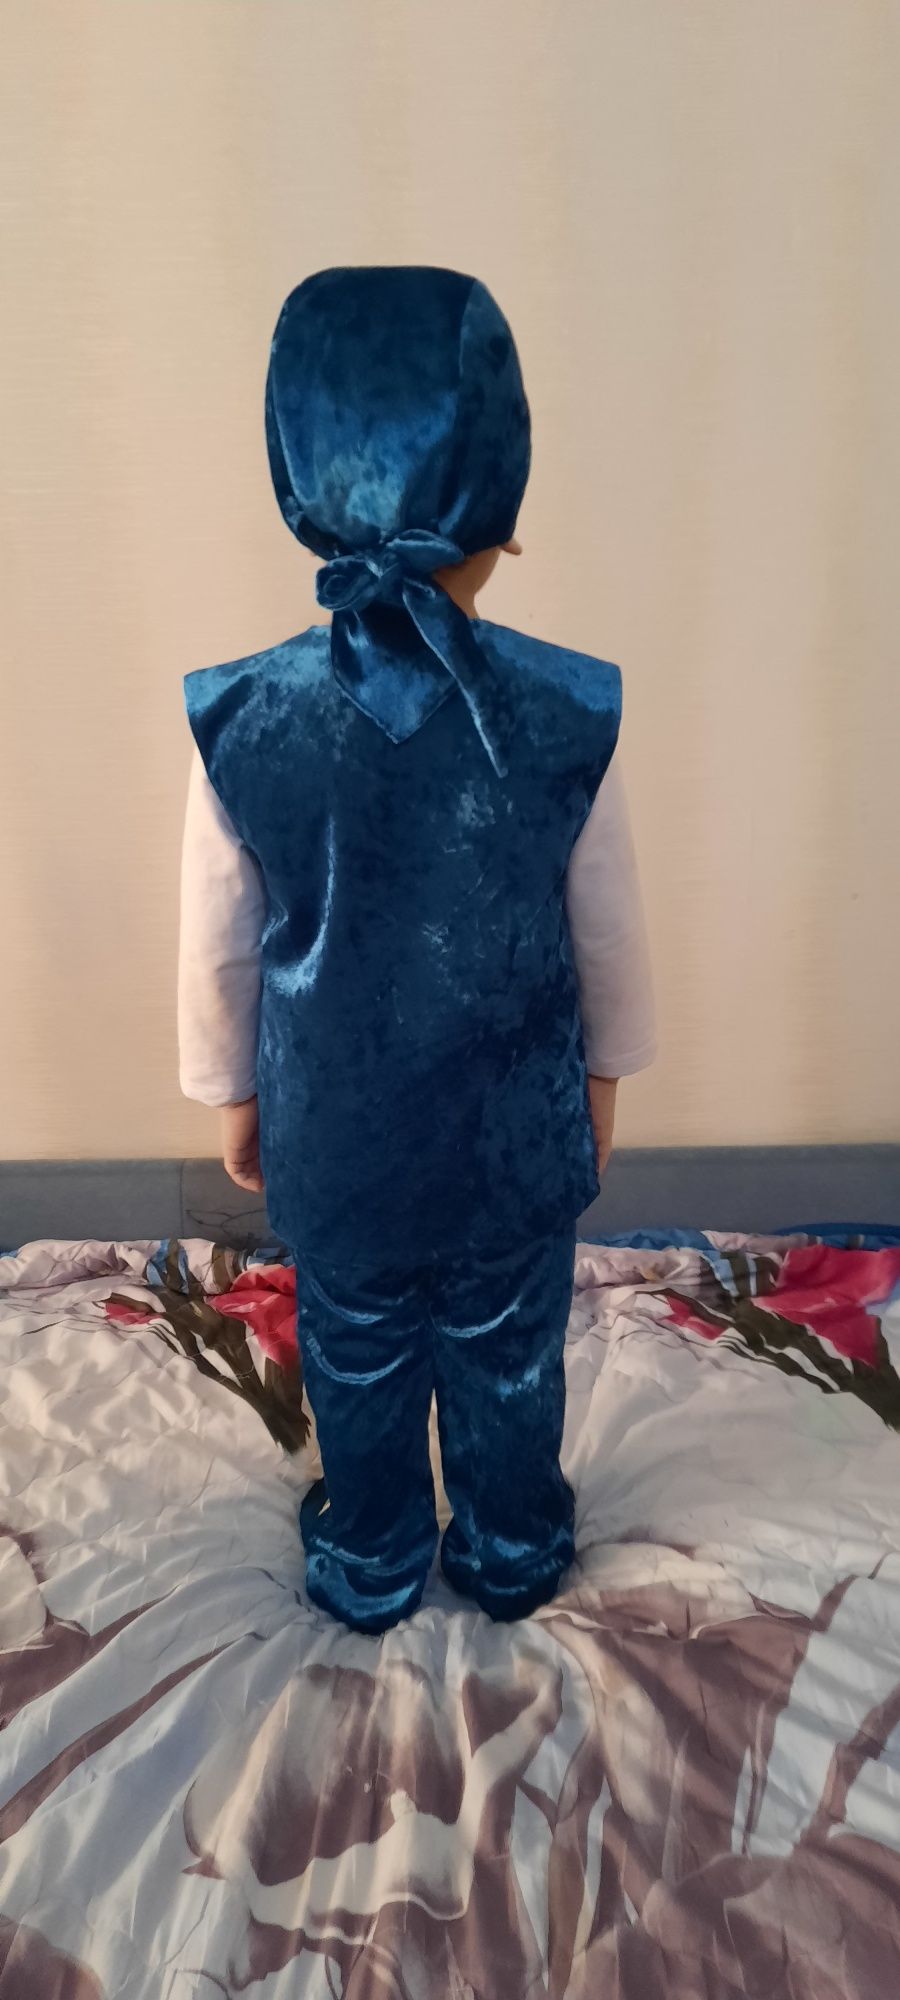 Казакский национальной костюм для мальчика